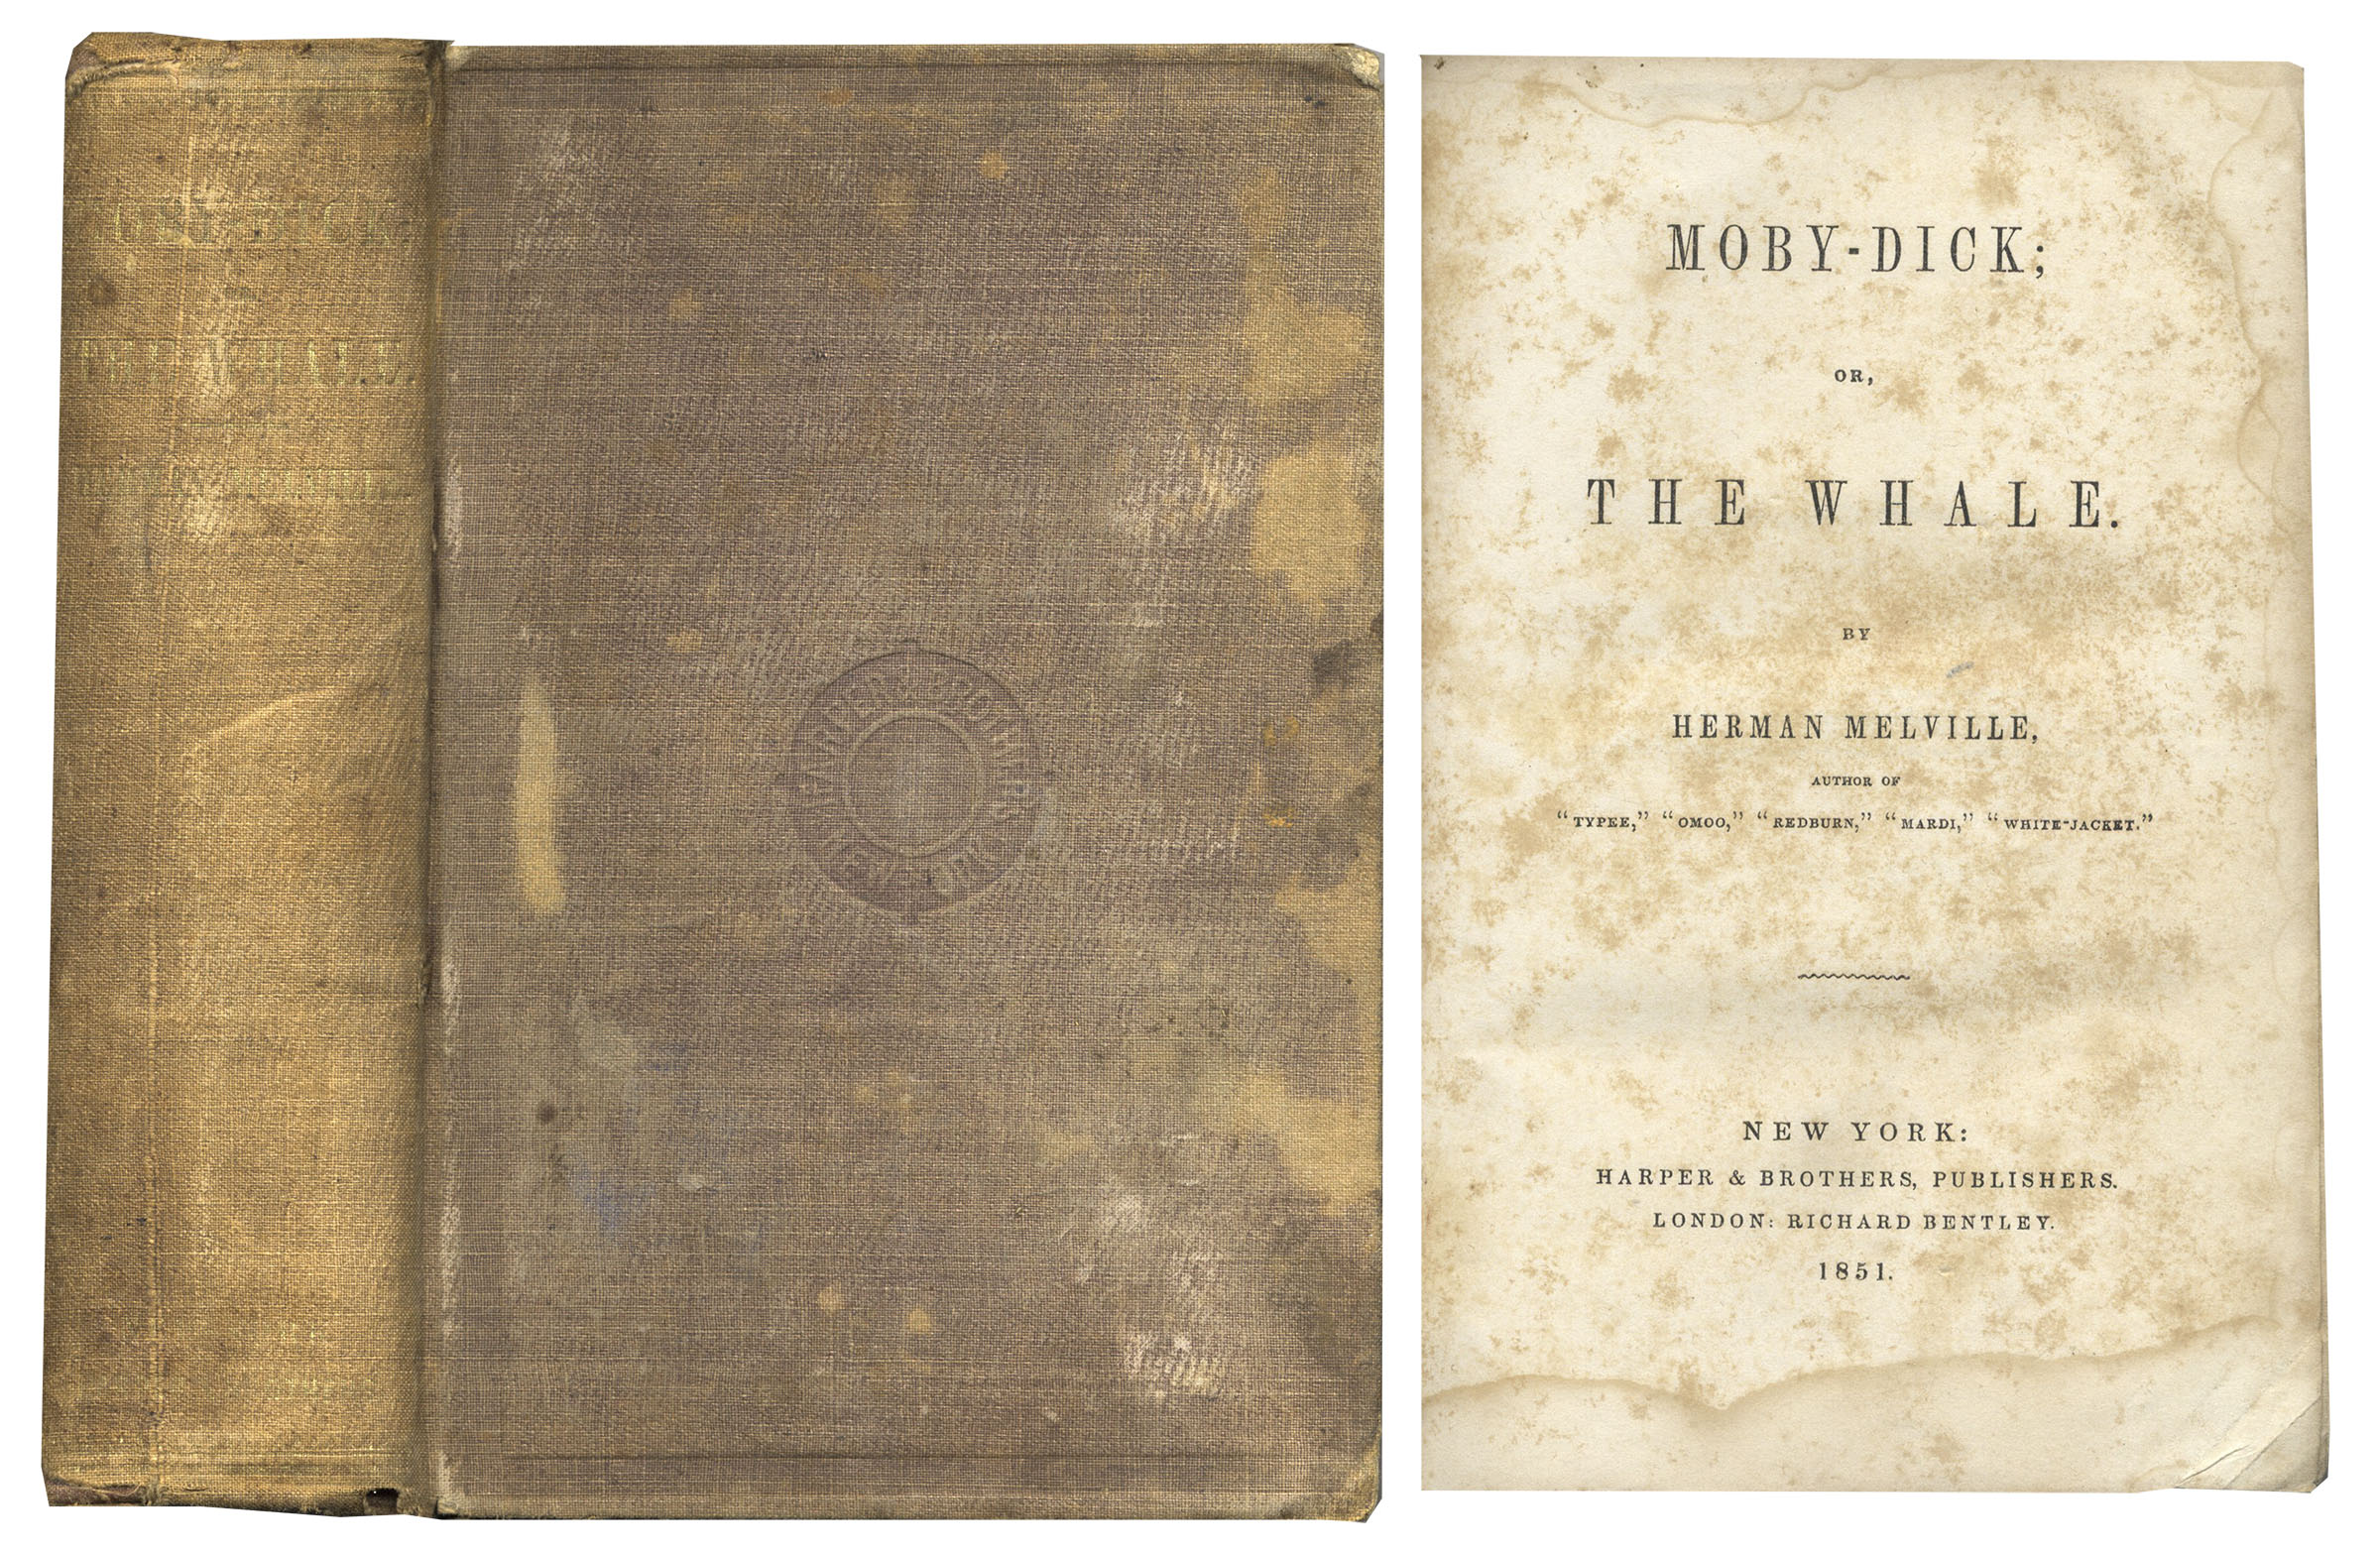 November 14 1851 herman melville's novel moby dick